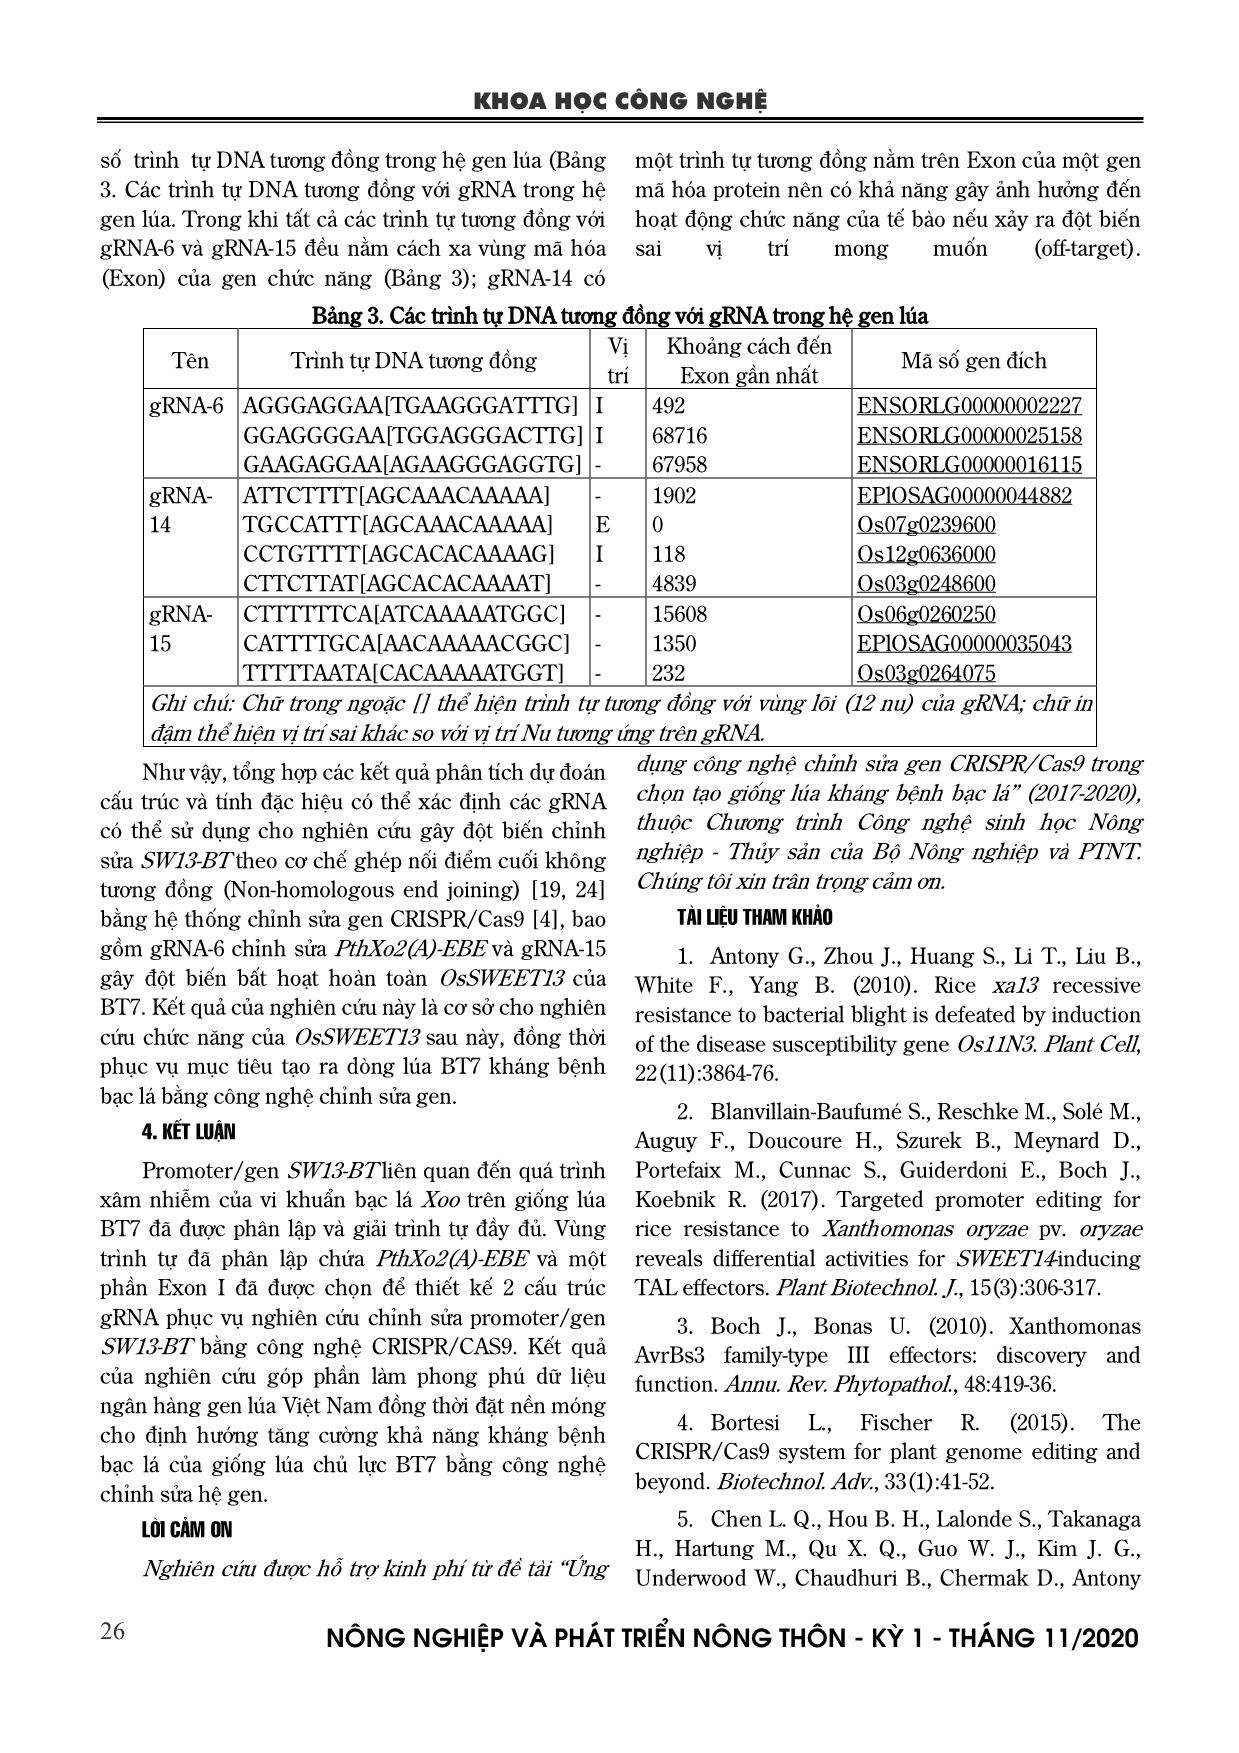 Phân lập và thiết kế gRNA chỉnh sửa promter OsSWEET13 liên quan đến bệnh bạc lá trên lúa Bắc thơm 7 trang 7